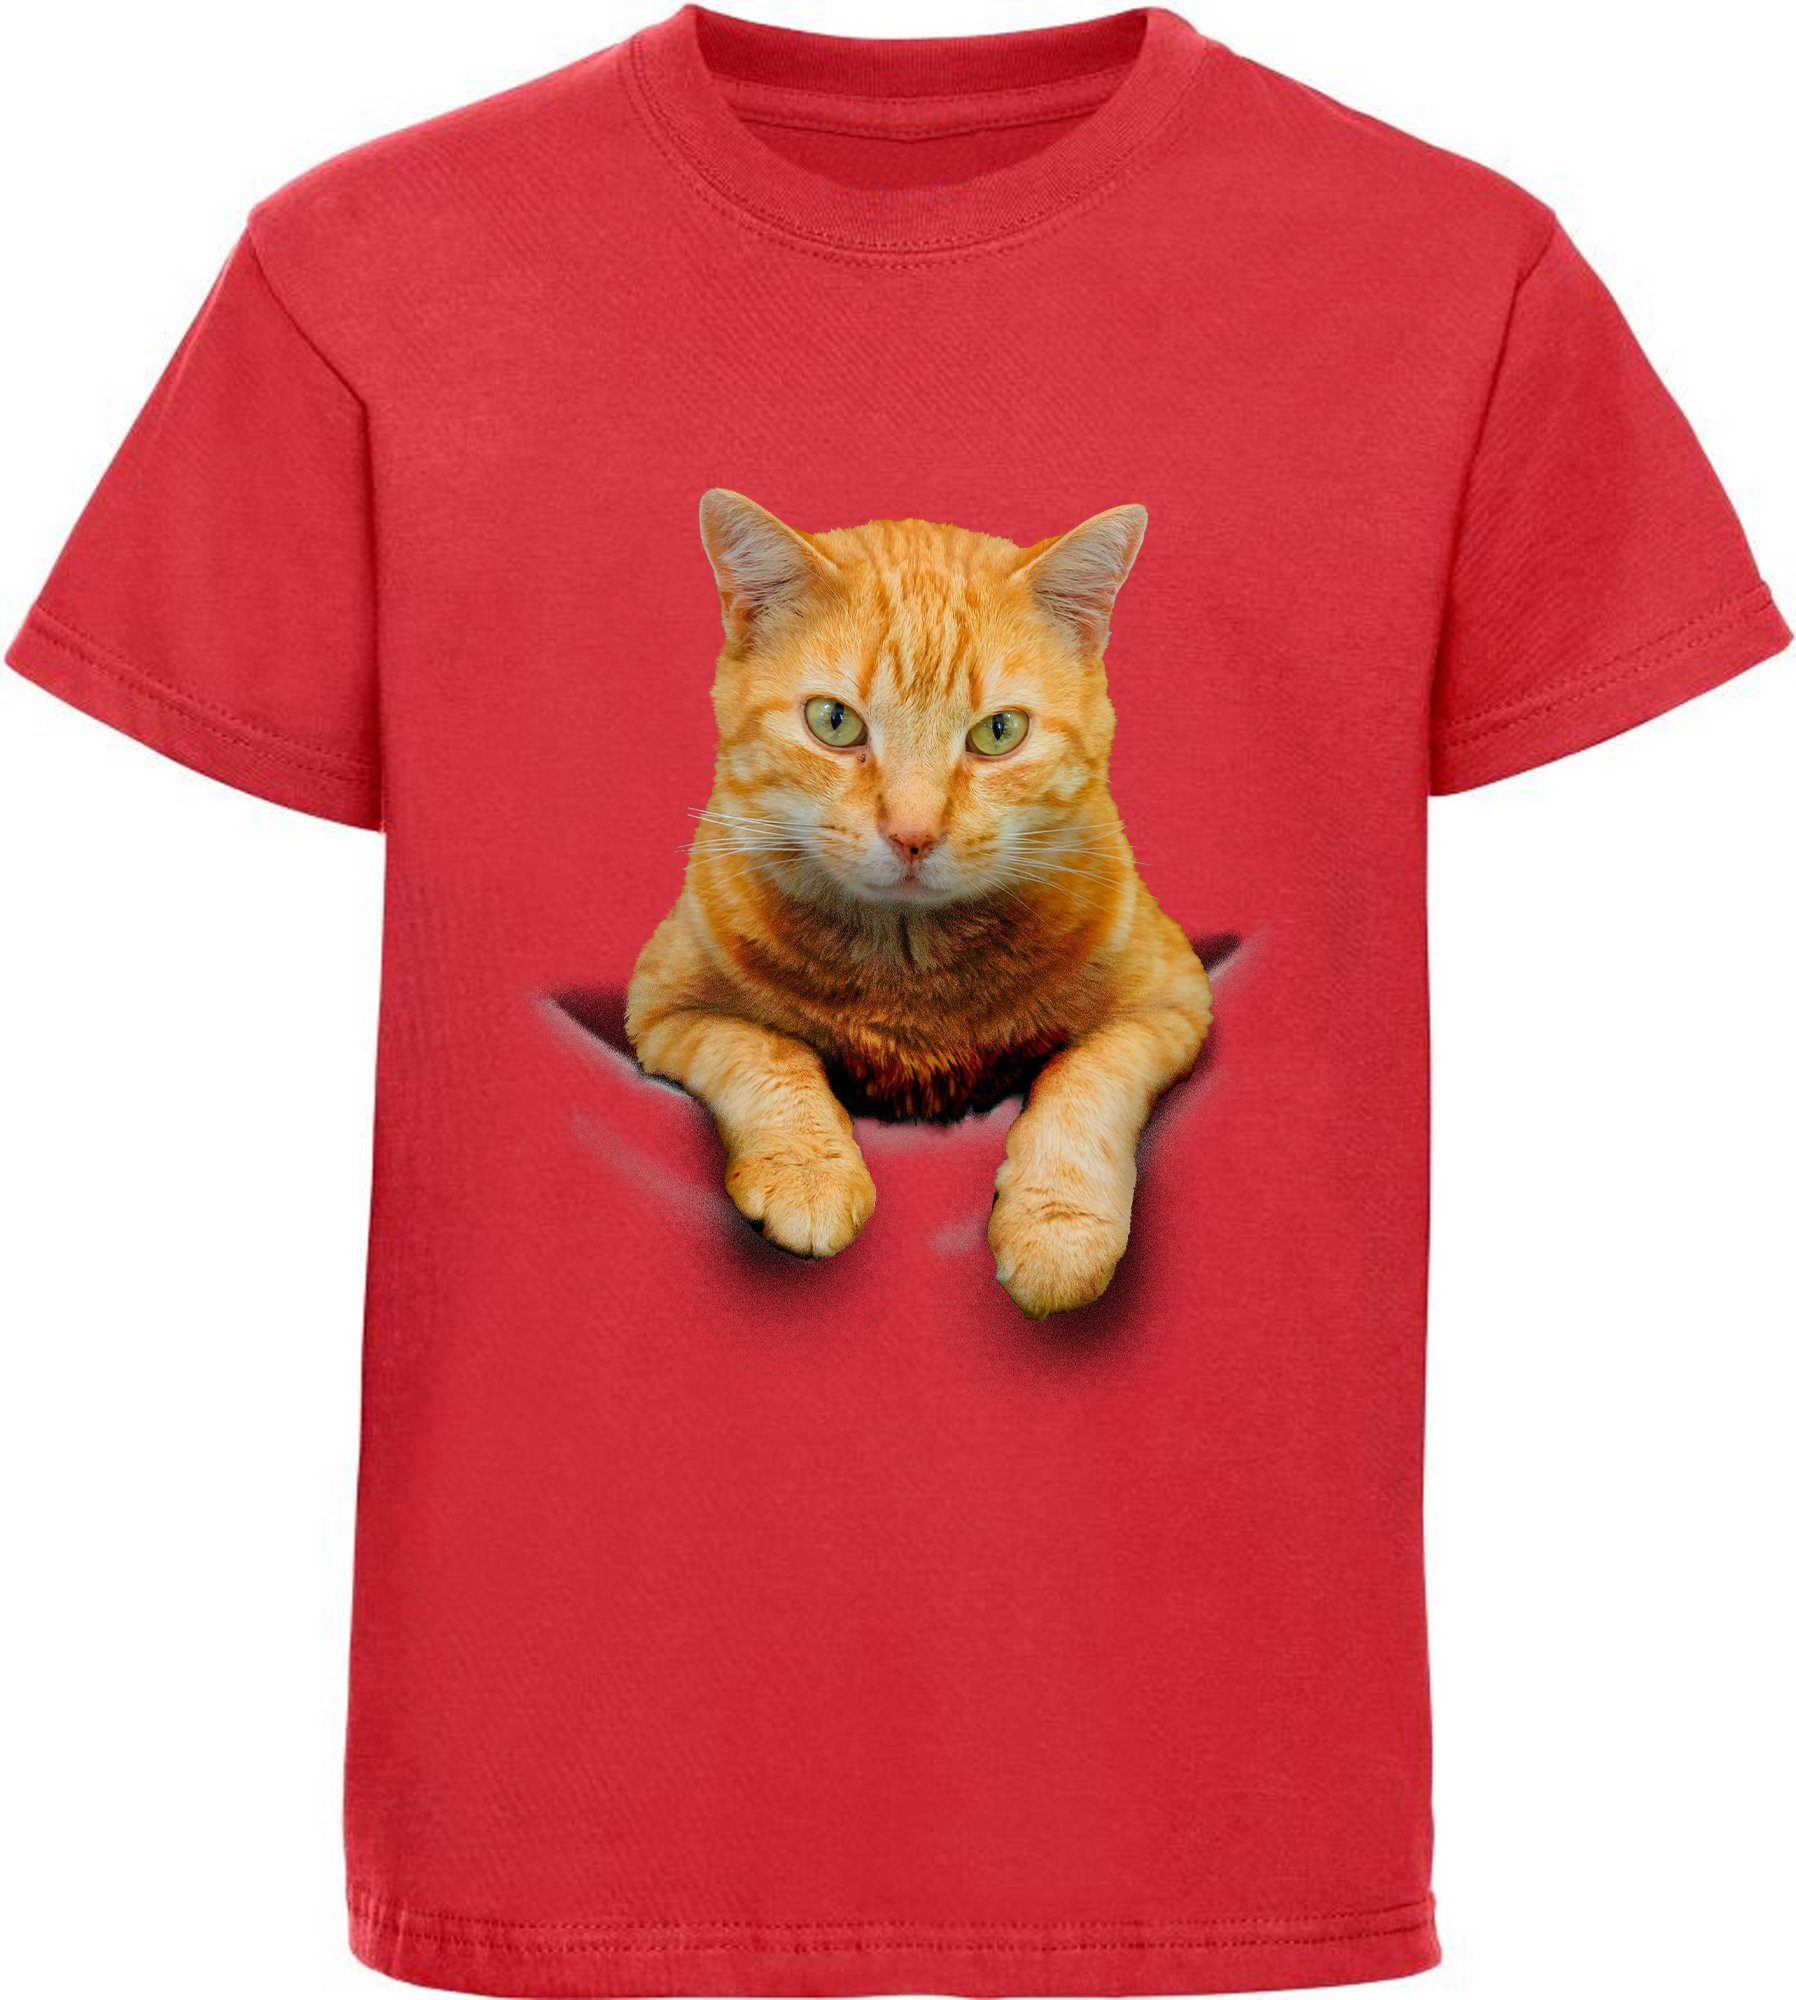 weiß, MyDesign24 i109 Print-Shirt rosa, Mädchen T-Shirt in Katze bedrucktes Baumwollshirt schwarz, rot, mit Tasche der Katze,